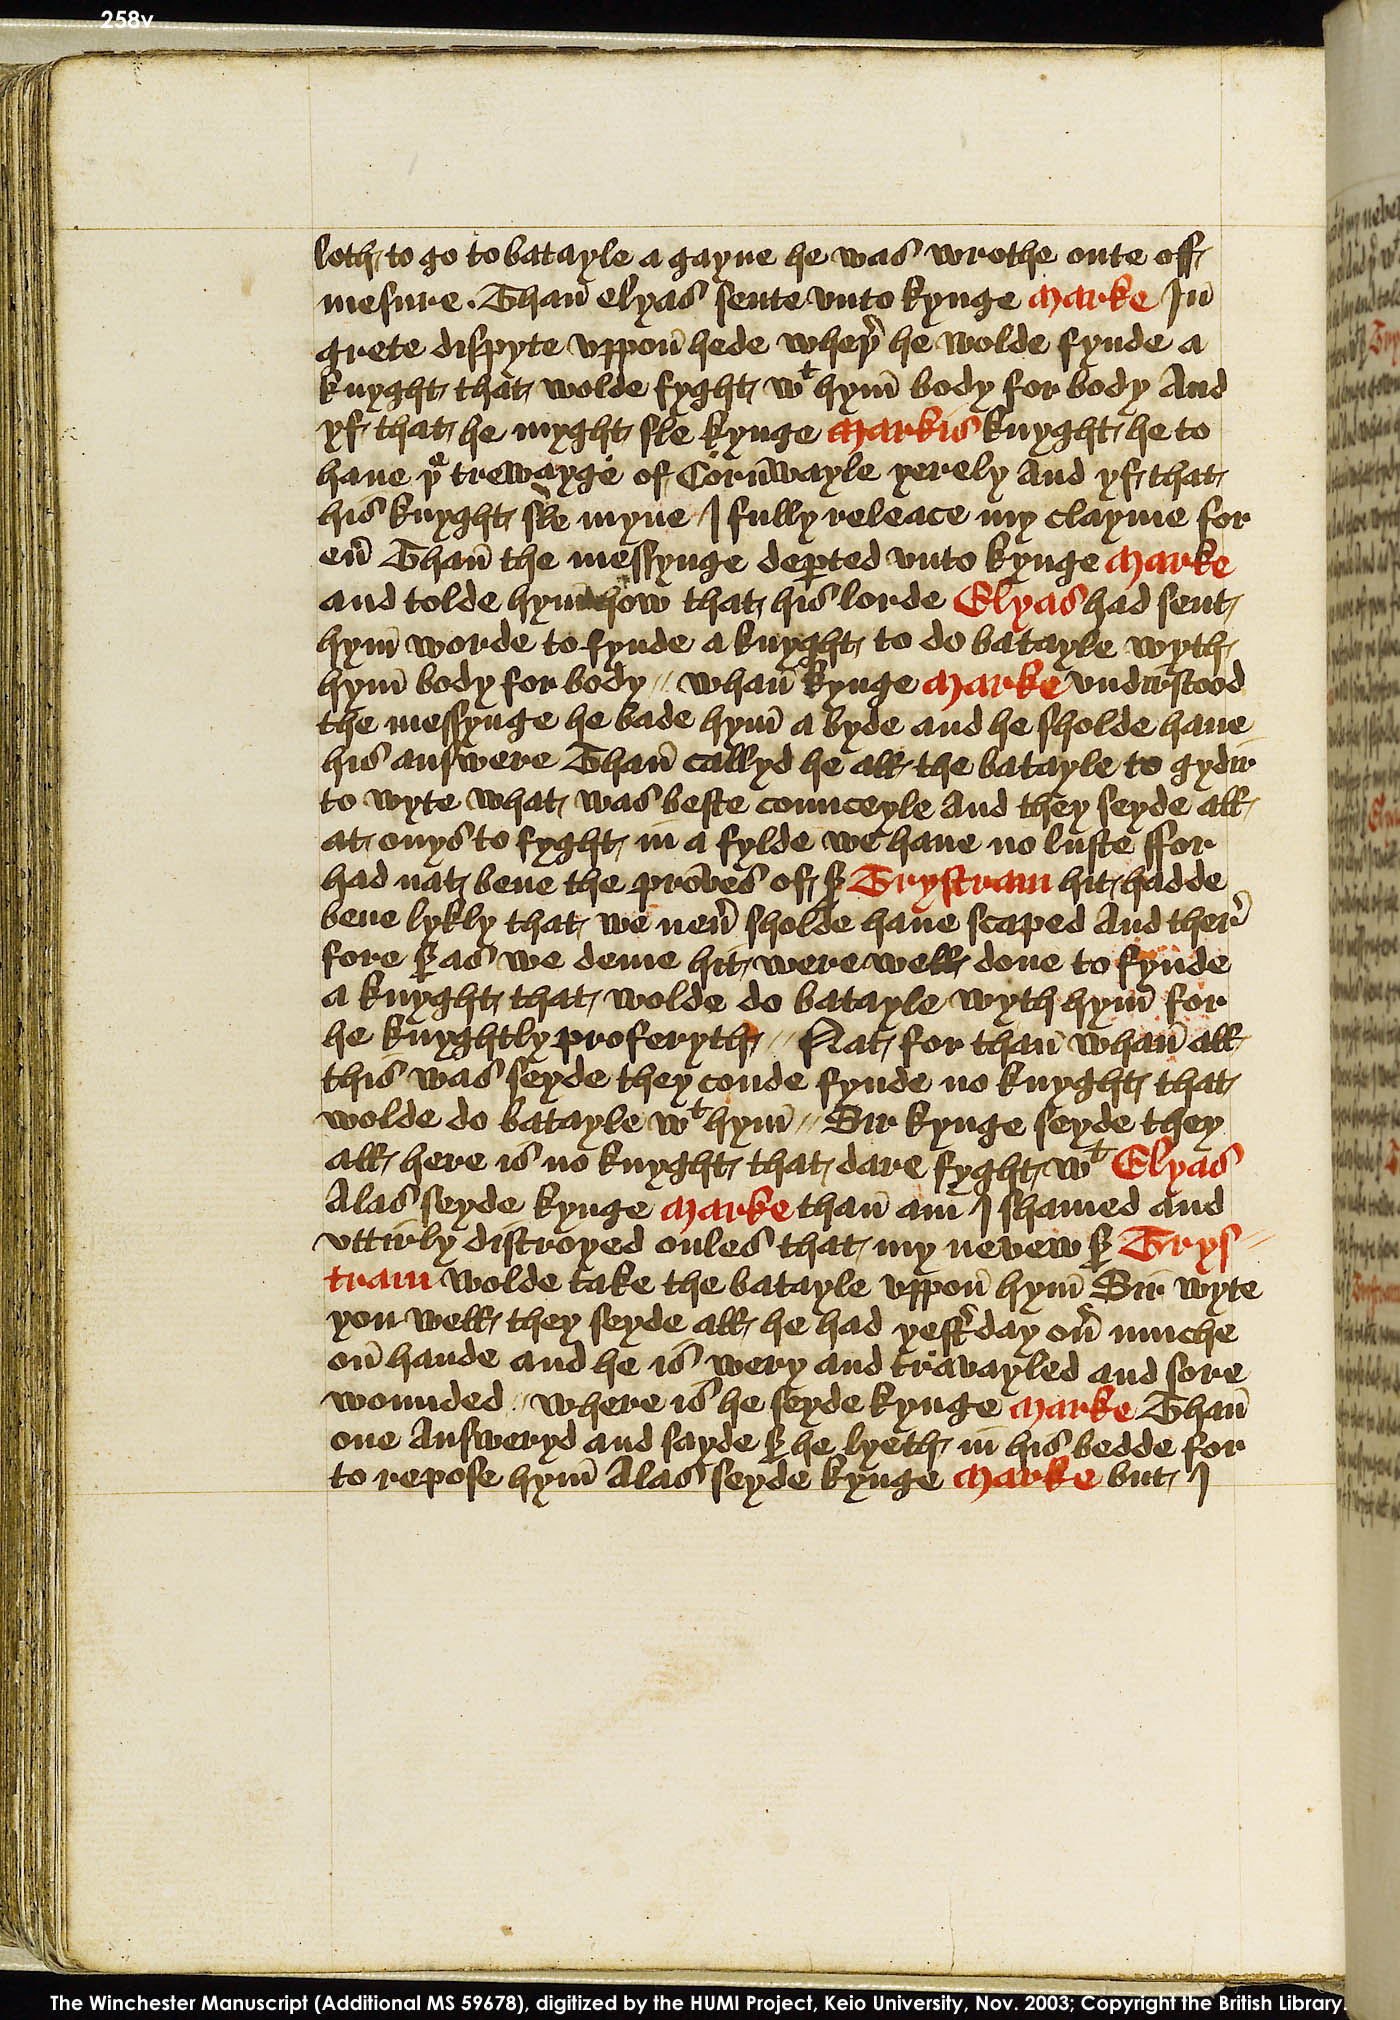 Folio 258v